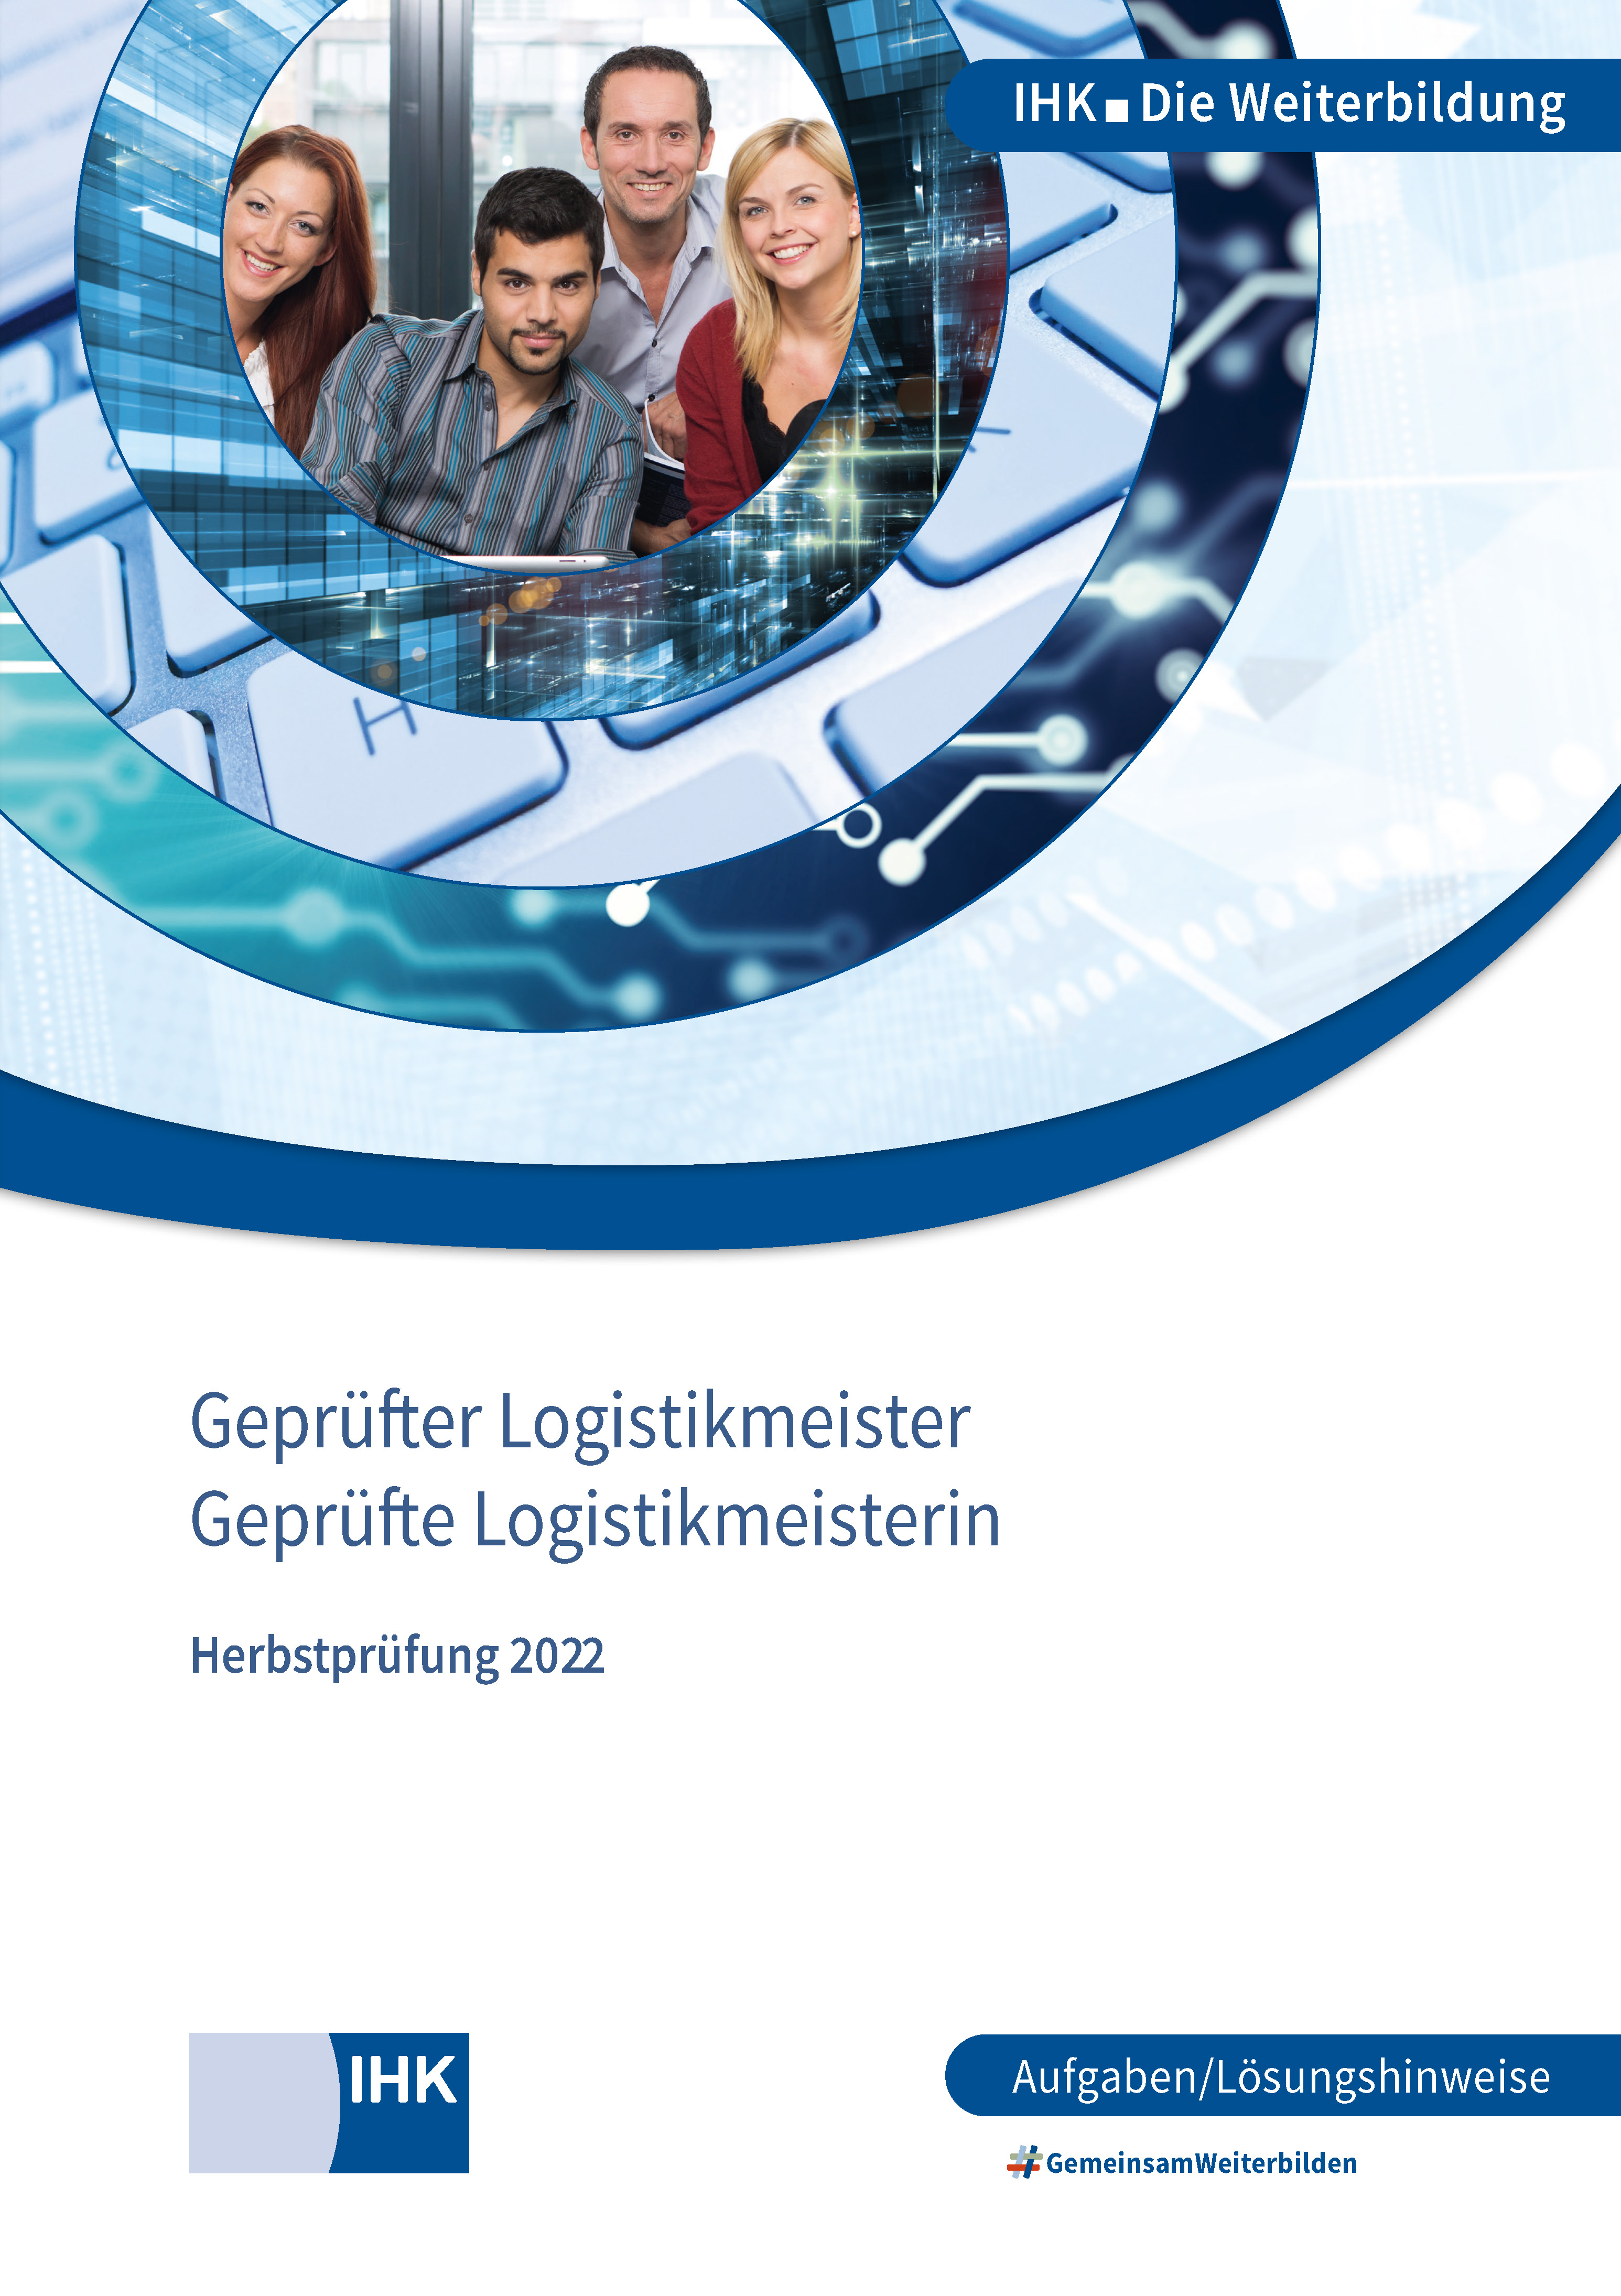 Cover von Geprüfte Logistikmeister - Herbstprüfung 2022 (Verordnung 2010)